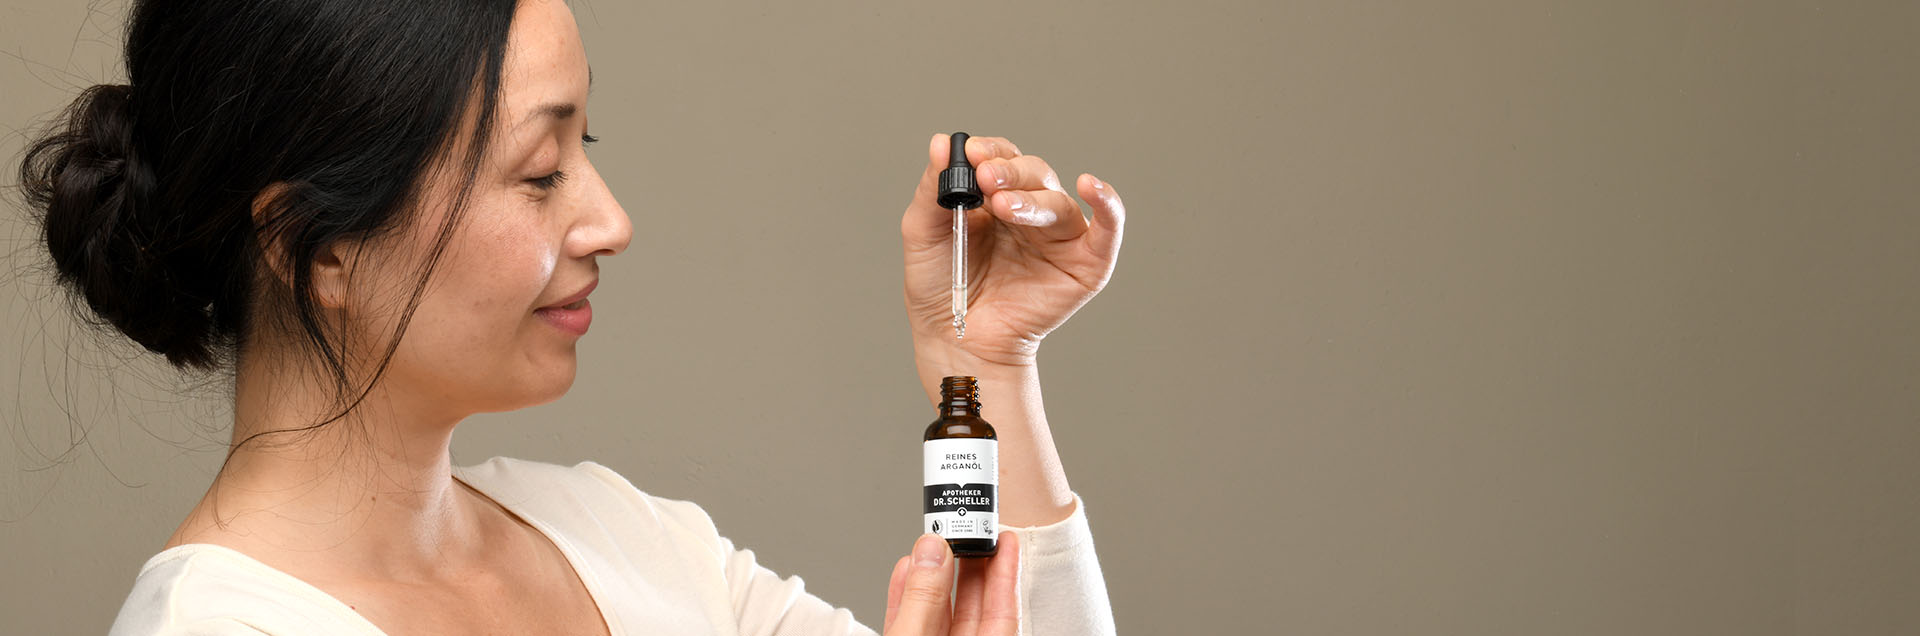 Dr. Scheller model with argan oil